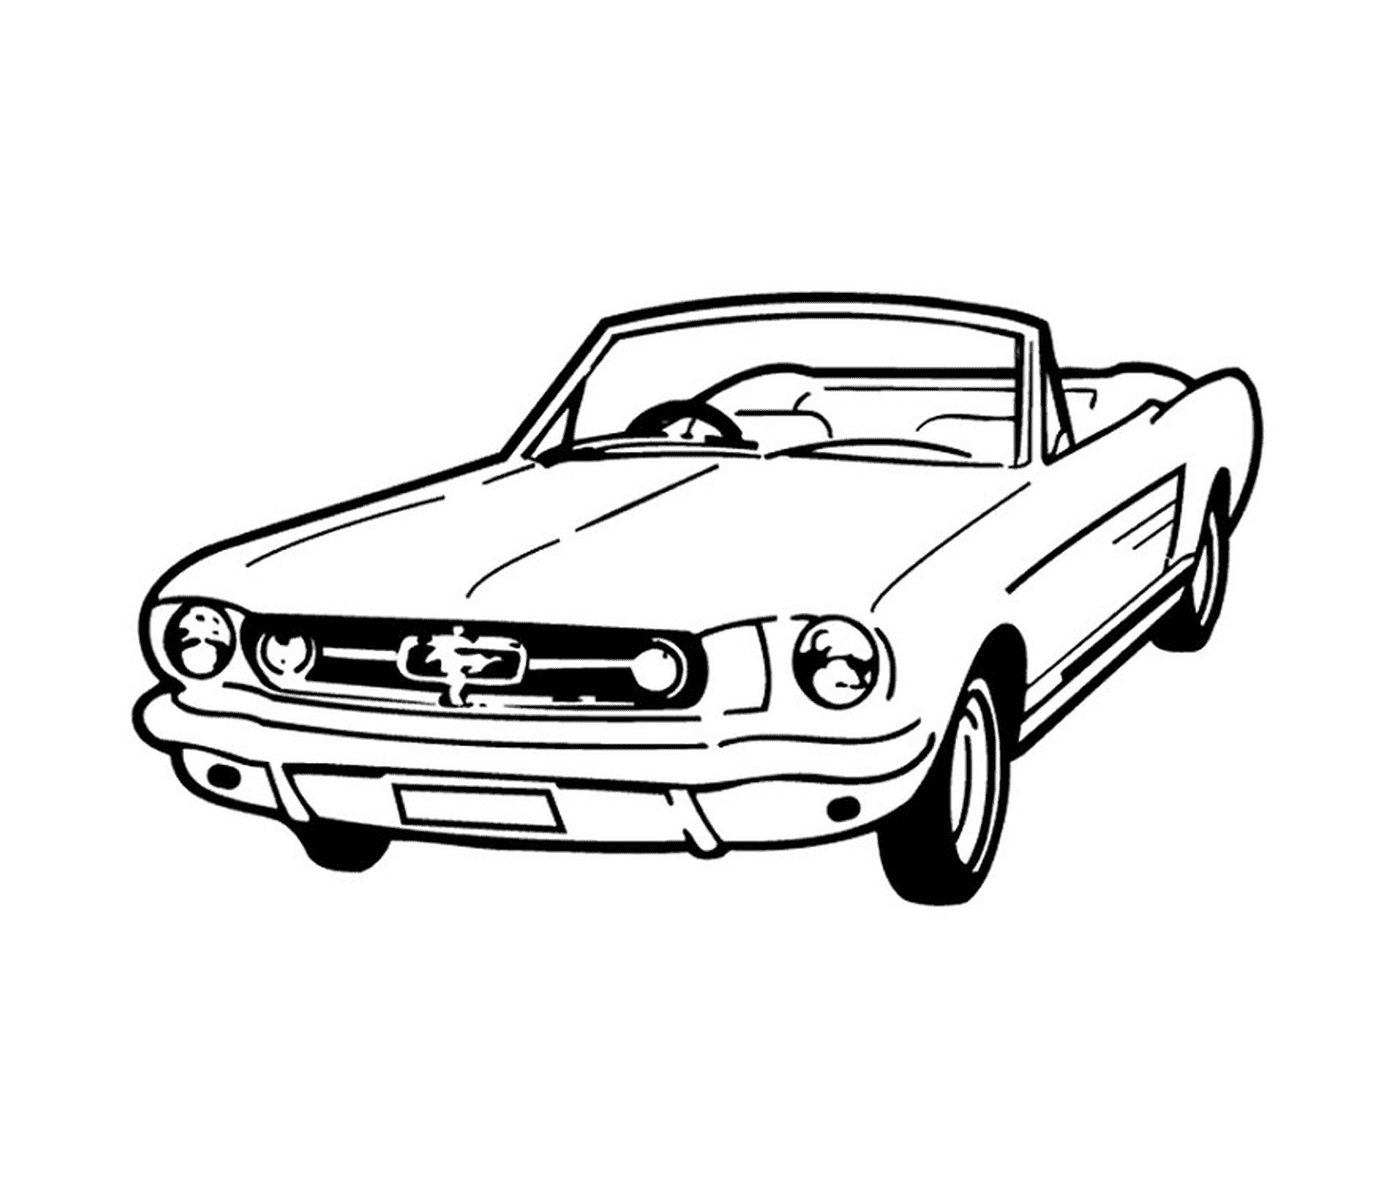  Auto d'epoca Mustang 